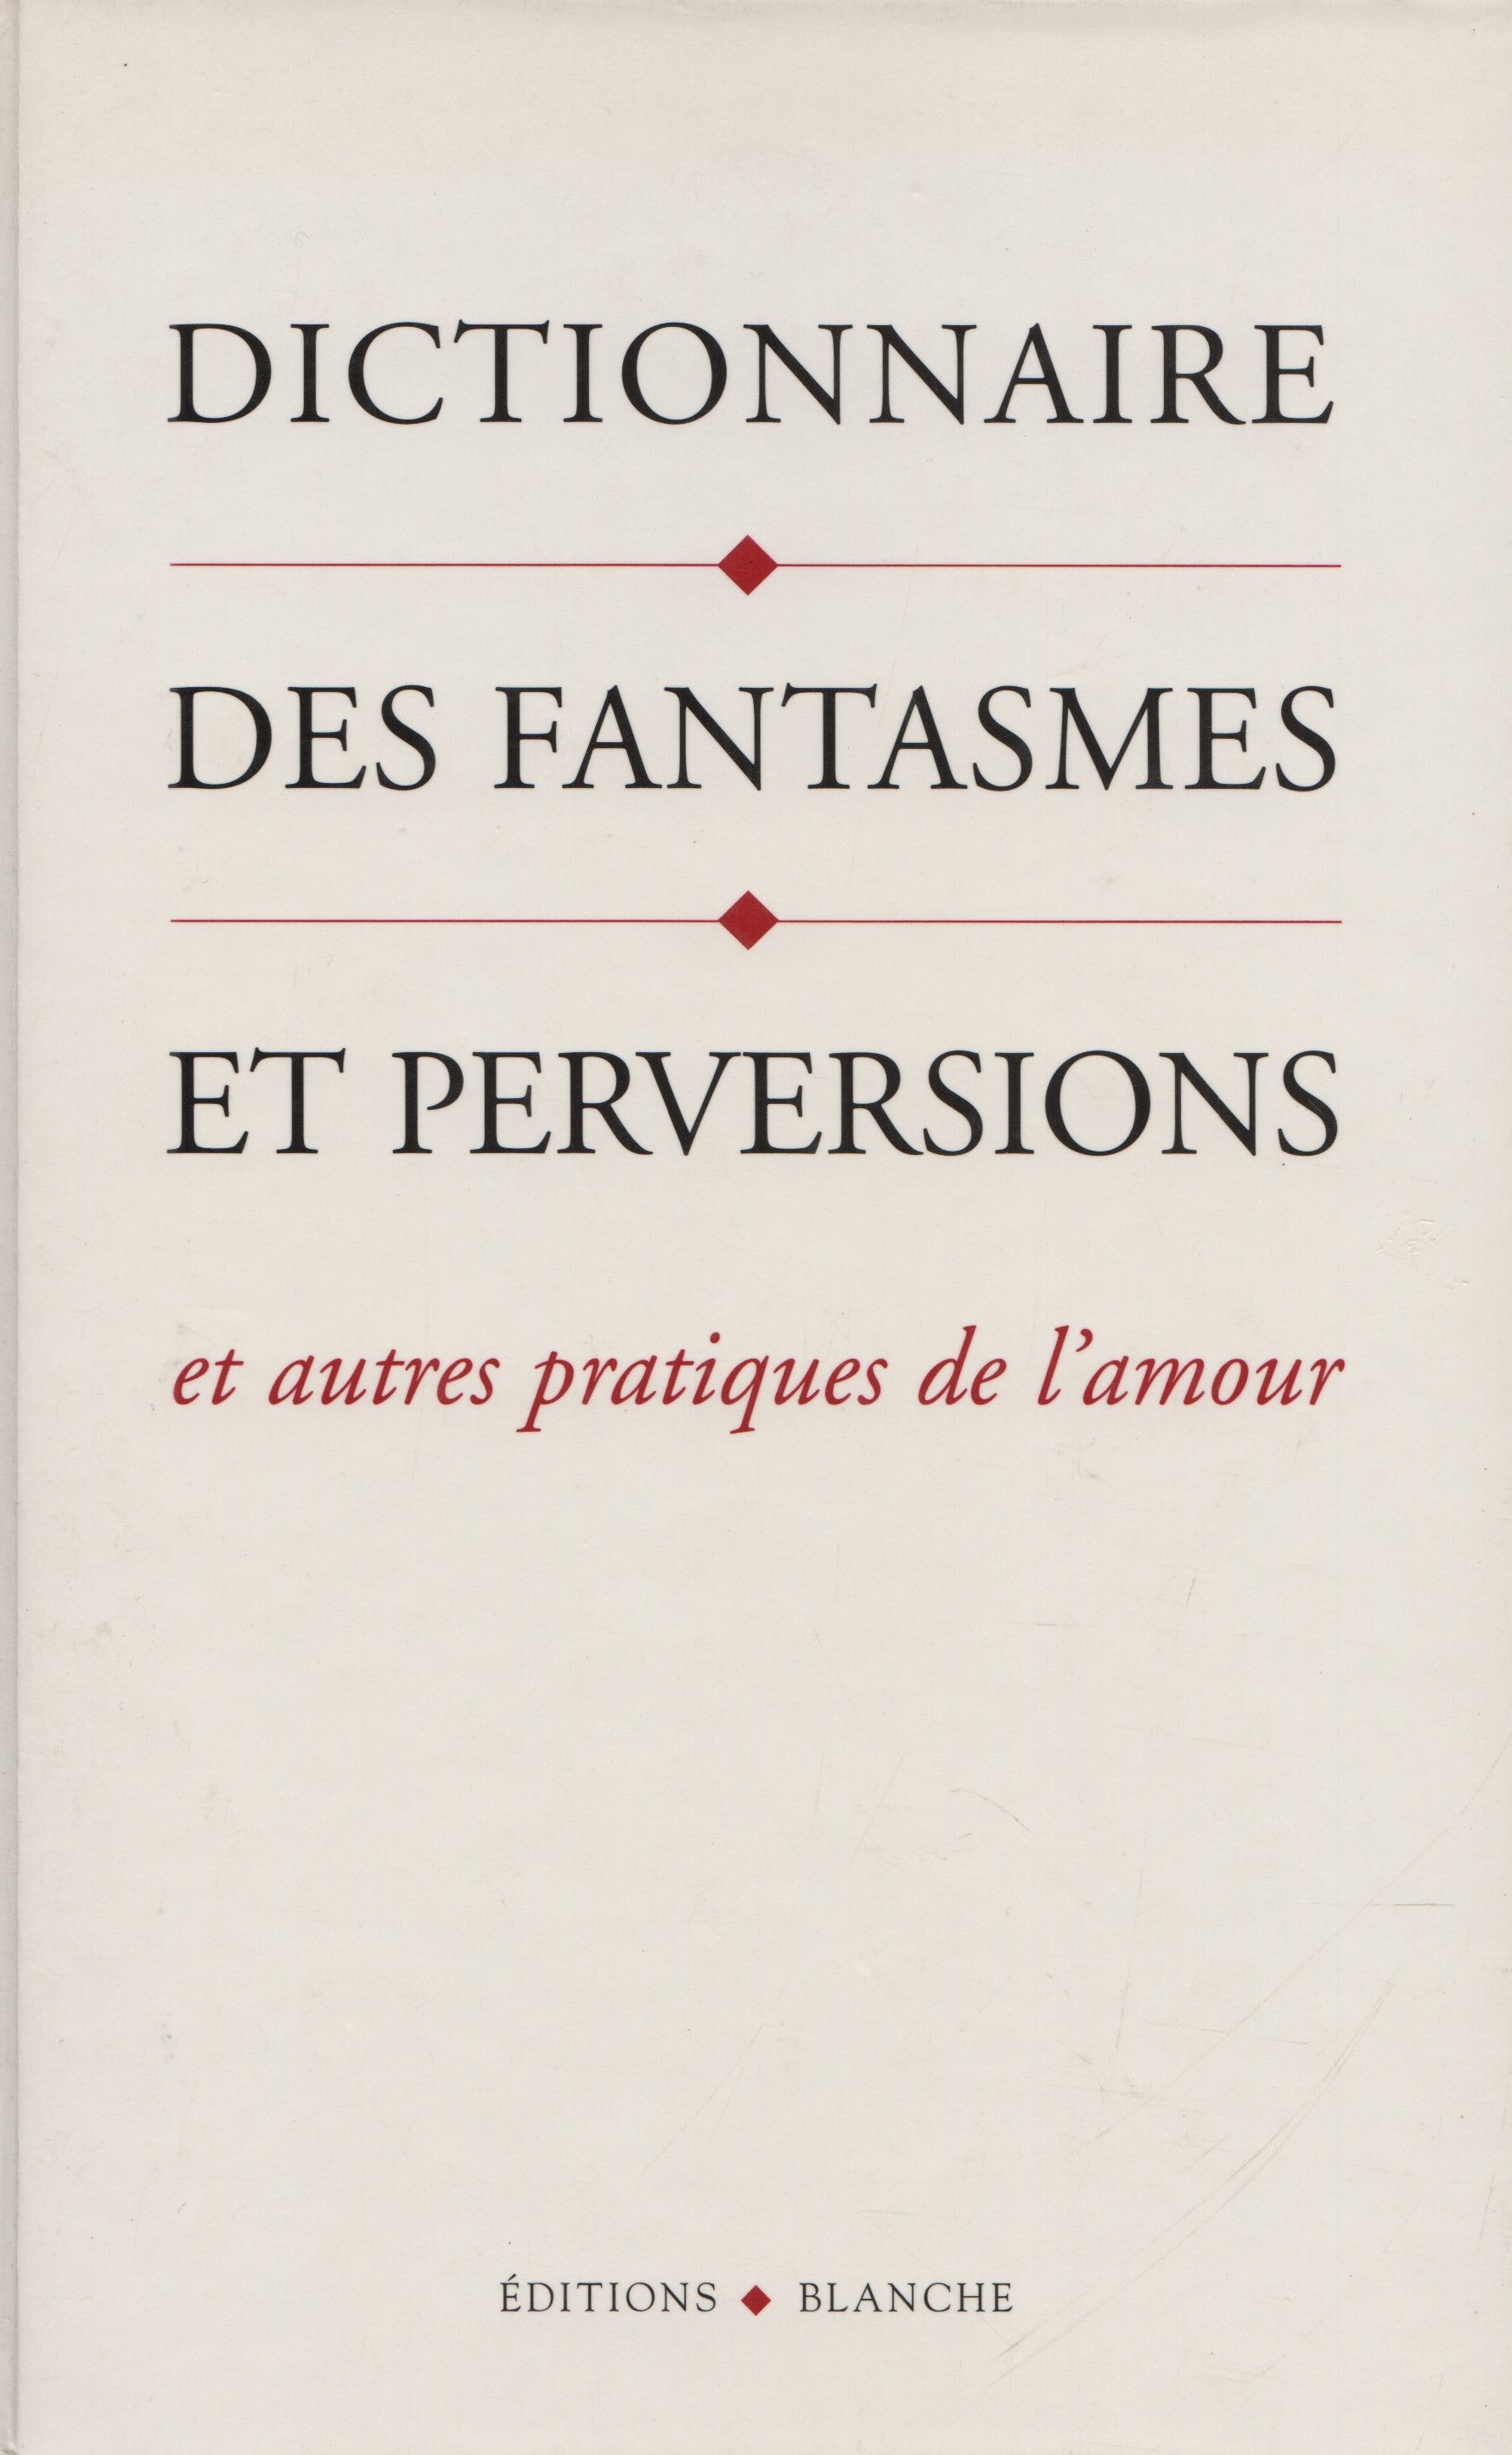 LOVE, BRENDA B. Dictionnaire des fantasmes et perversions et autres pratiques de l'amour